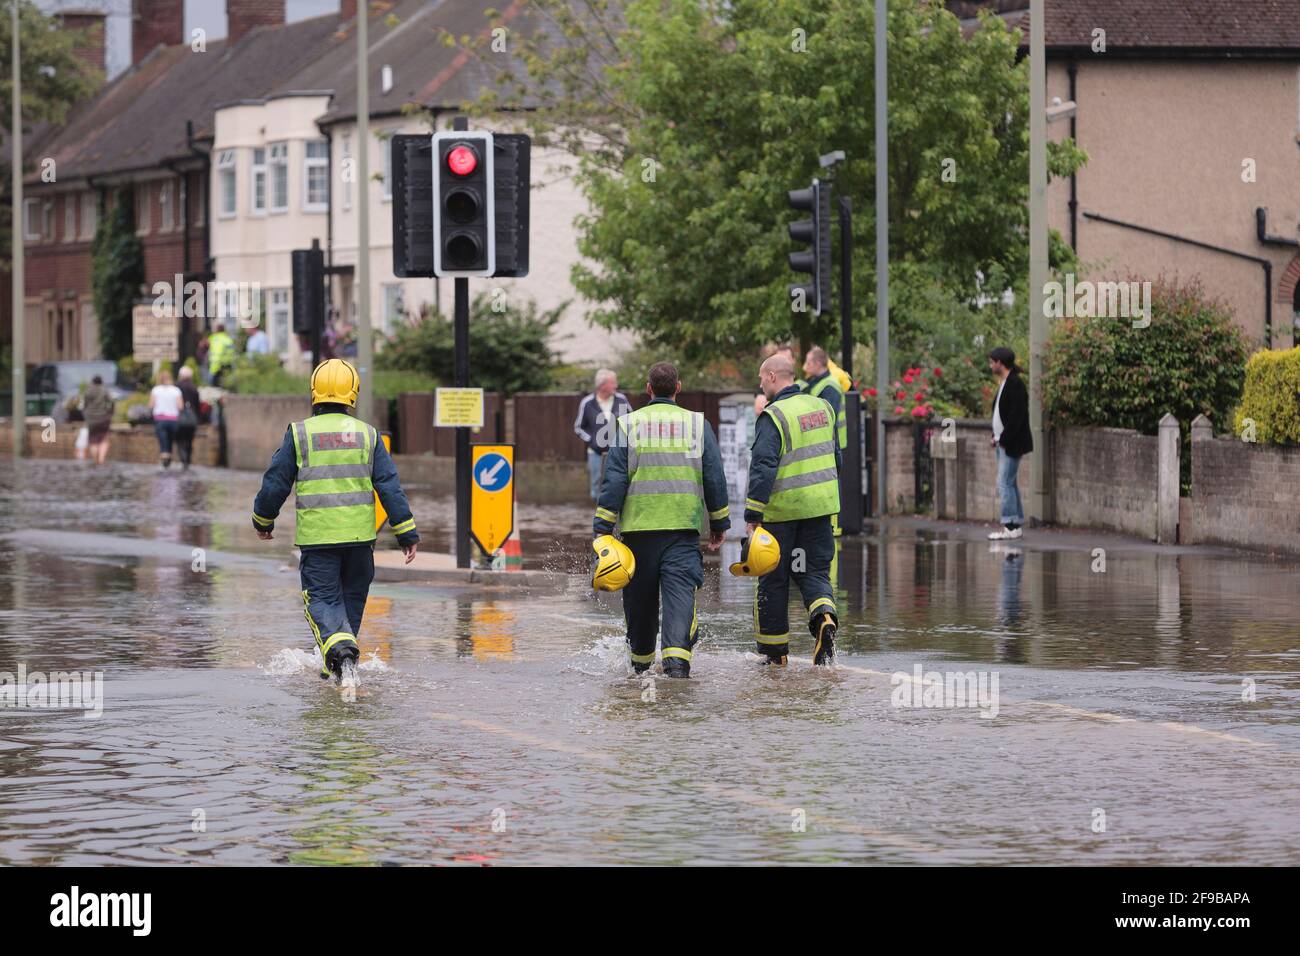 Les pompiers marchant dans les eaux d'inondation Abingdon Road, à l'ouest d'Oxford après des pluies torrentielles non saisonnières ont conduit à la Tamise et ses affluents à briser leurs berges. 250 maisons dans la région d'Abingdon et de Botley Road à l'ouest d'Oxford où il a été évacué. Abingdon Road, Oxford, Royaume-Uni. 23 juillet 2007 Banque D'Images